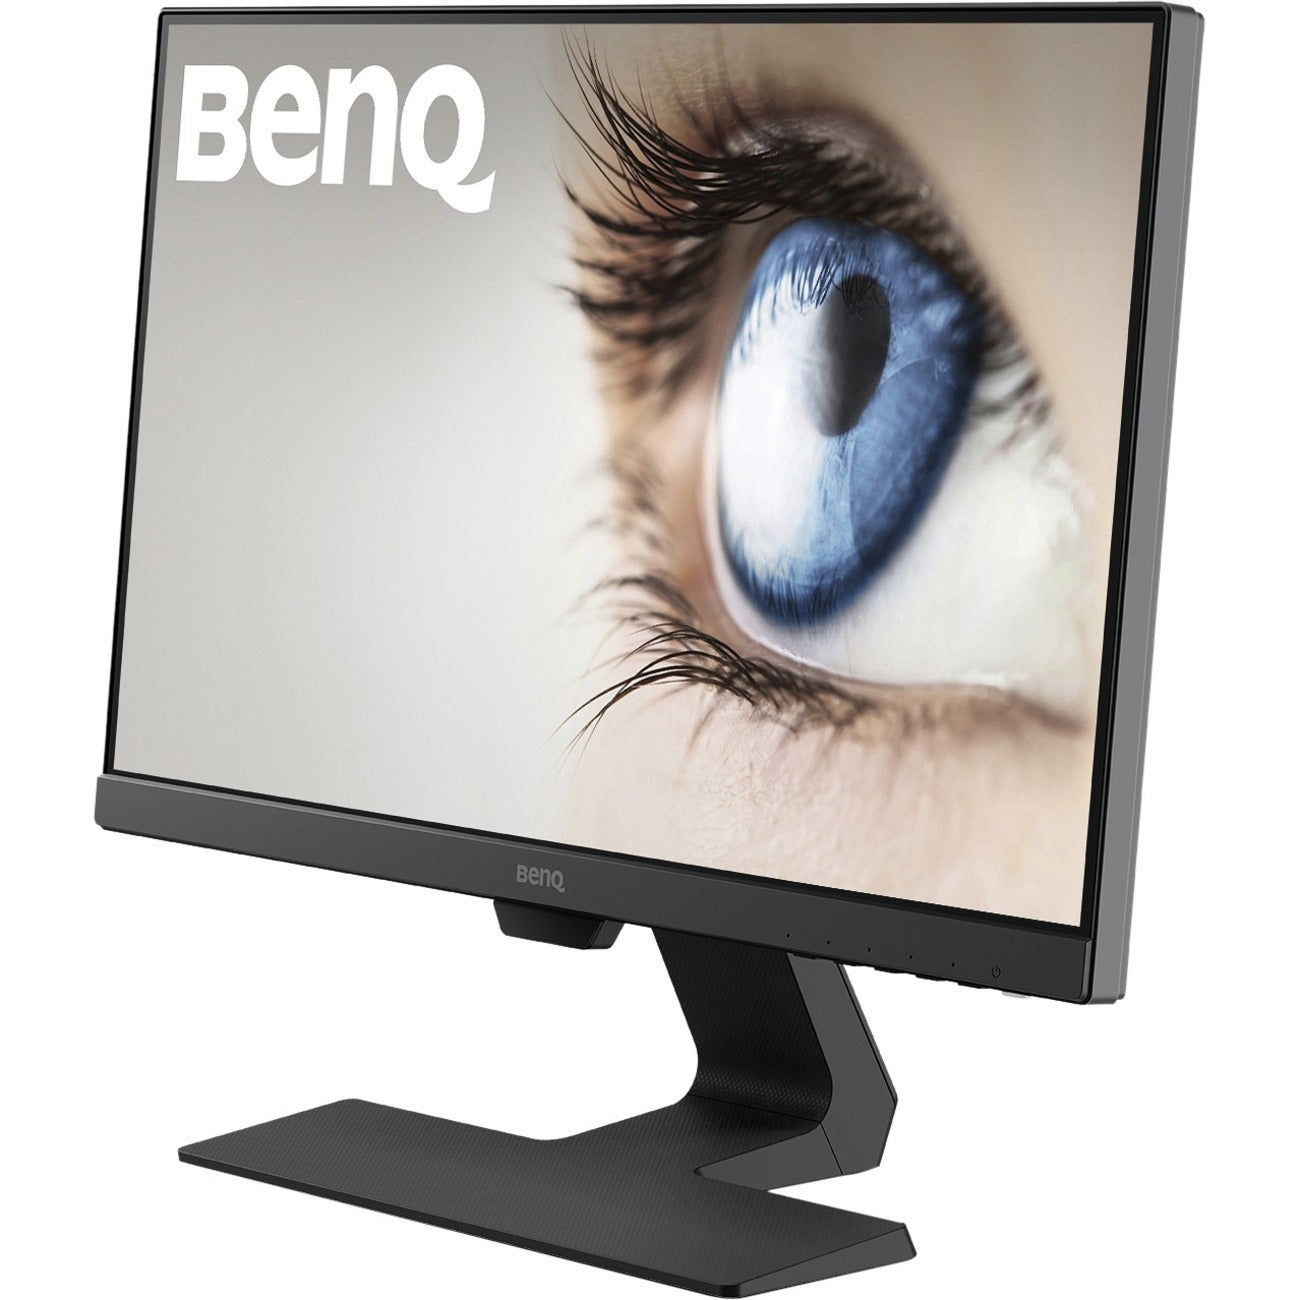 BenQ GW2283 Full HD LCD Monitor - 16:9 - Black - GW2283